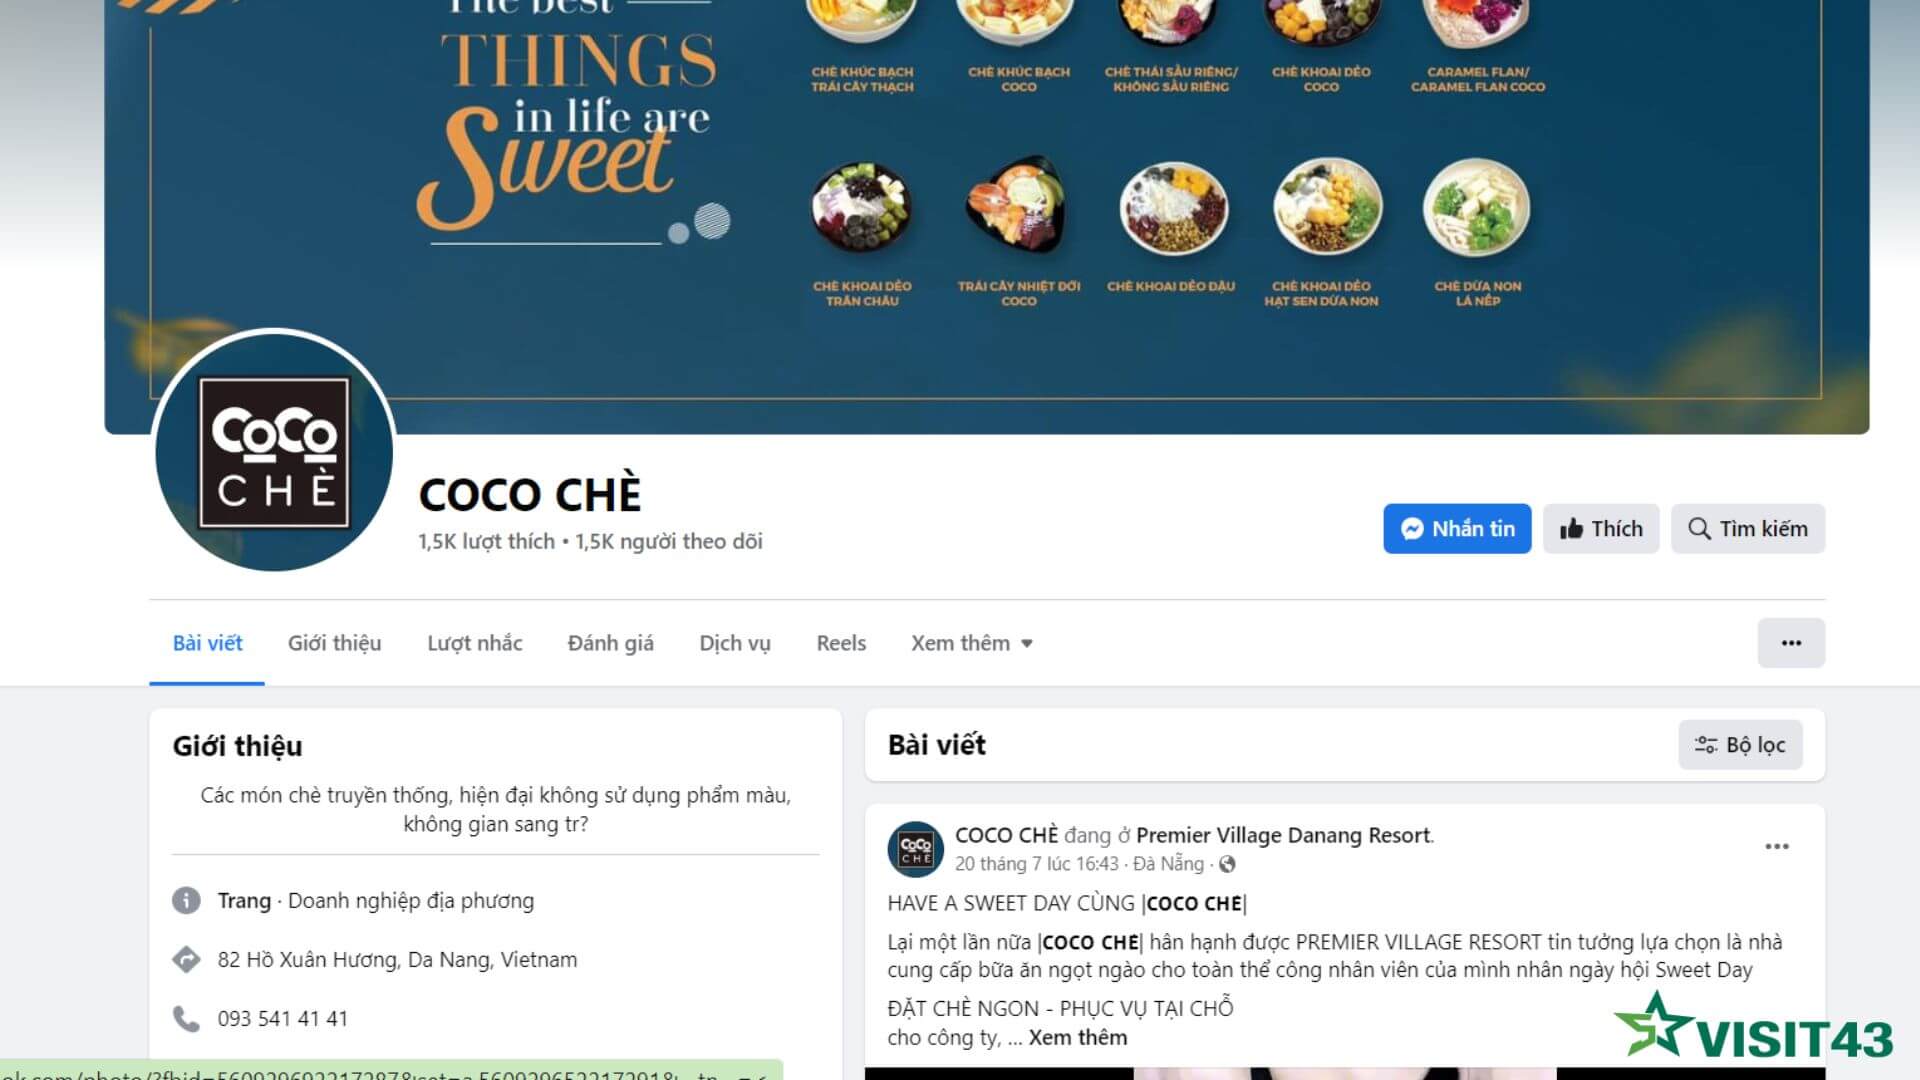 Coco Chè Đà Nẵng